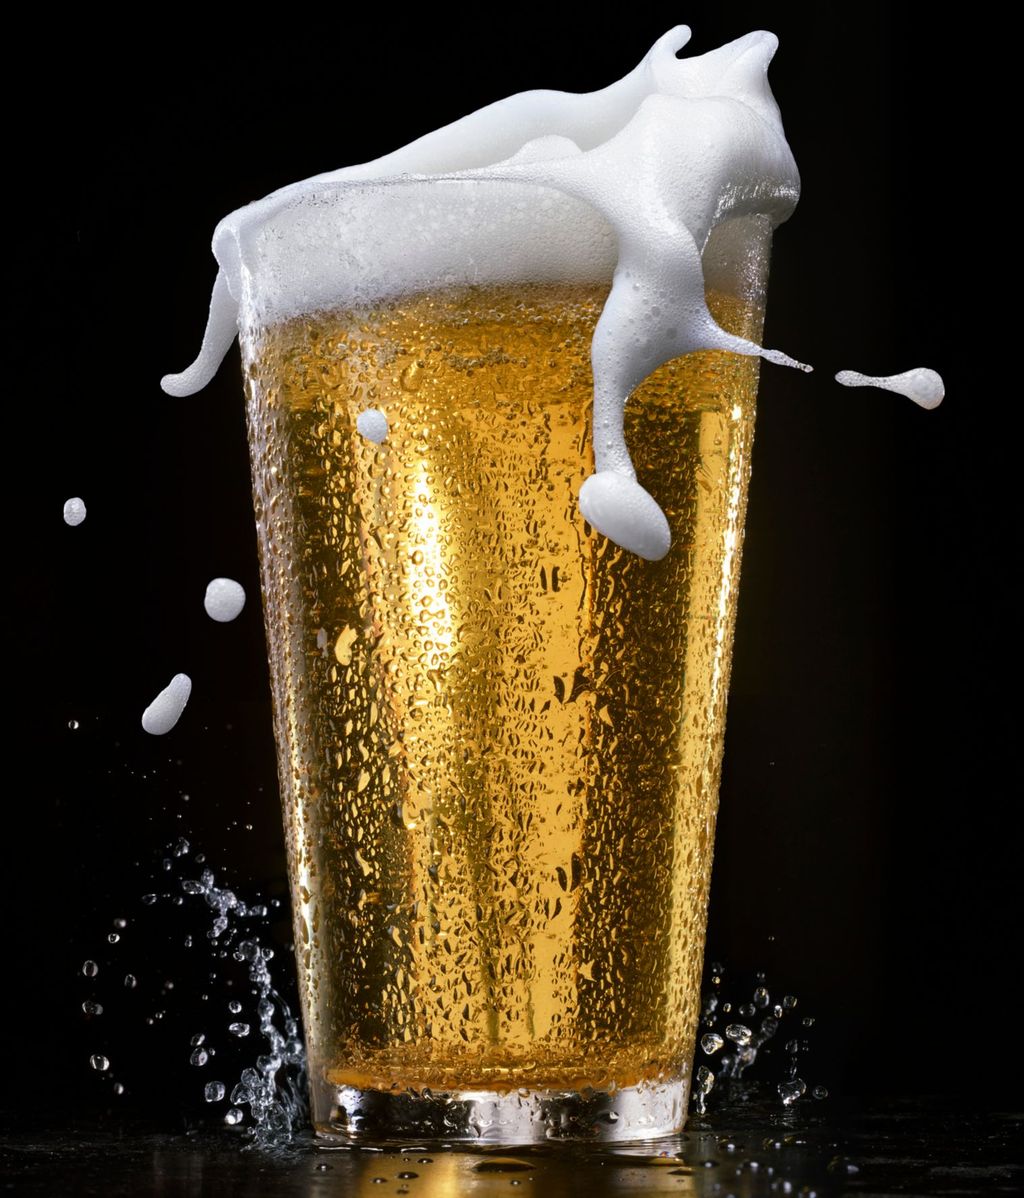 Oro líquido. En españa consumimos unos 80 litros de cerveza al año por cabeza.